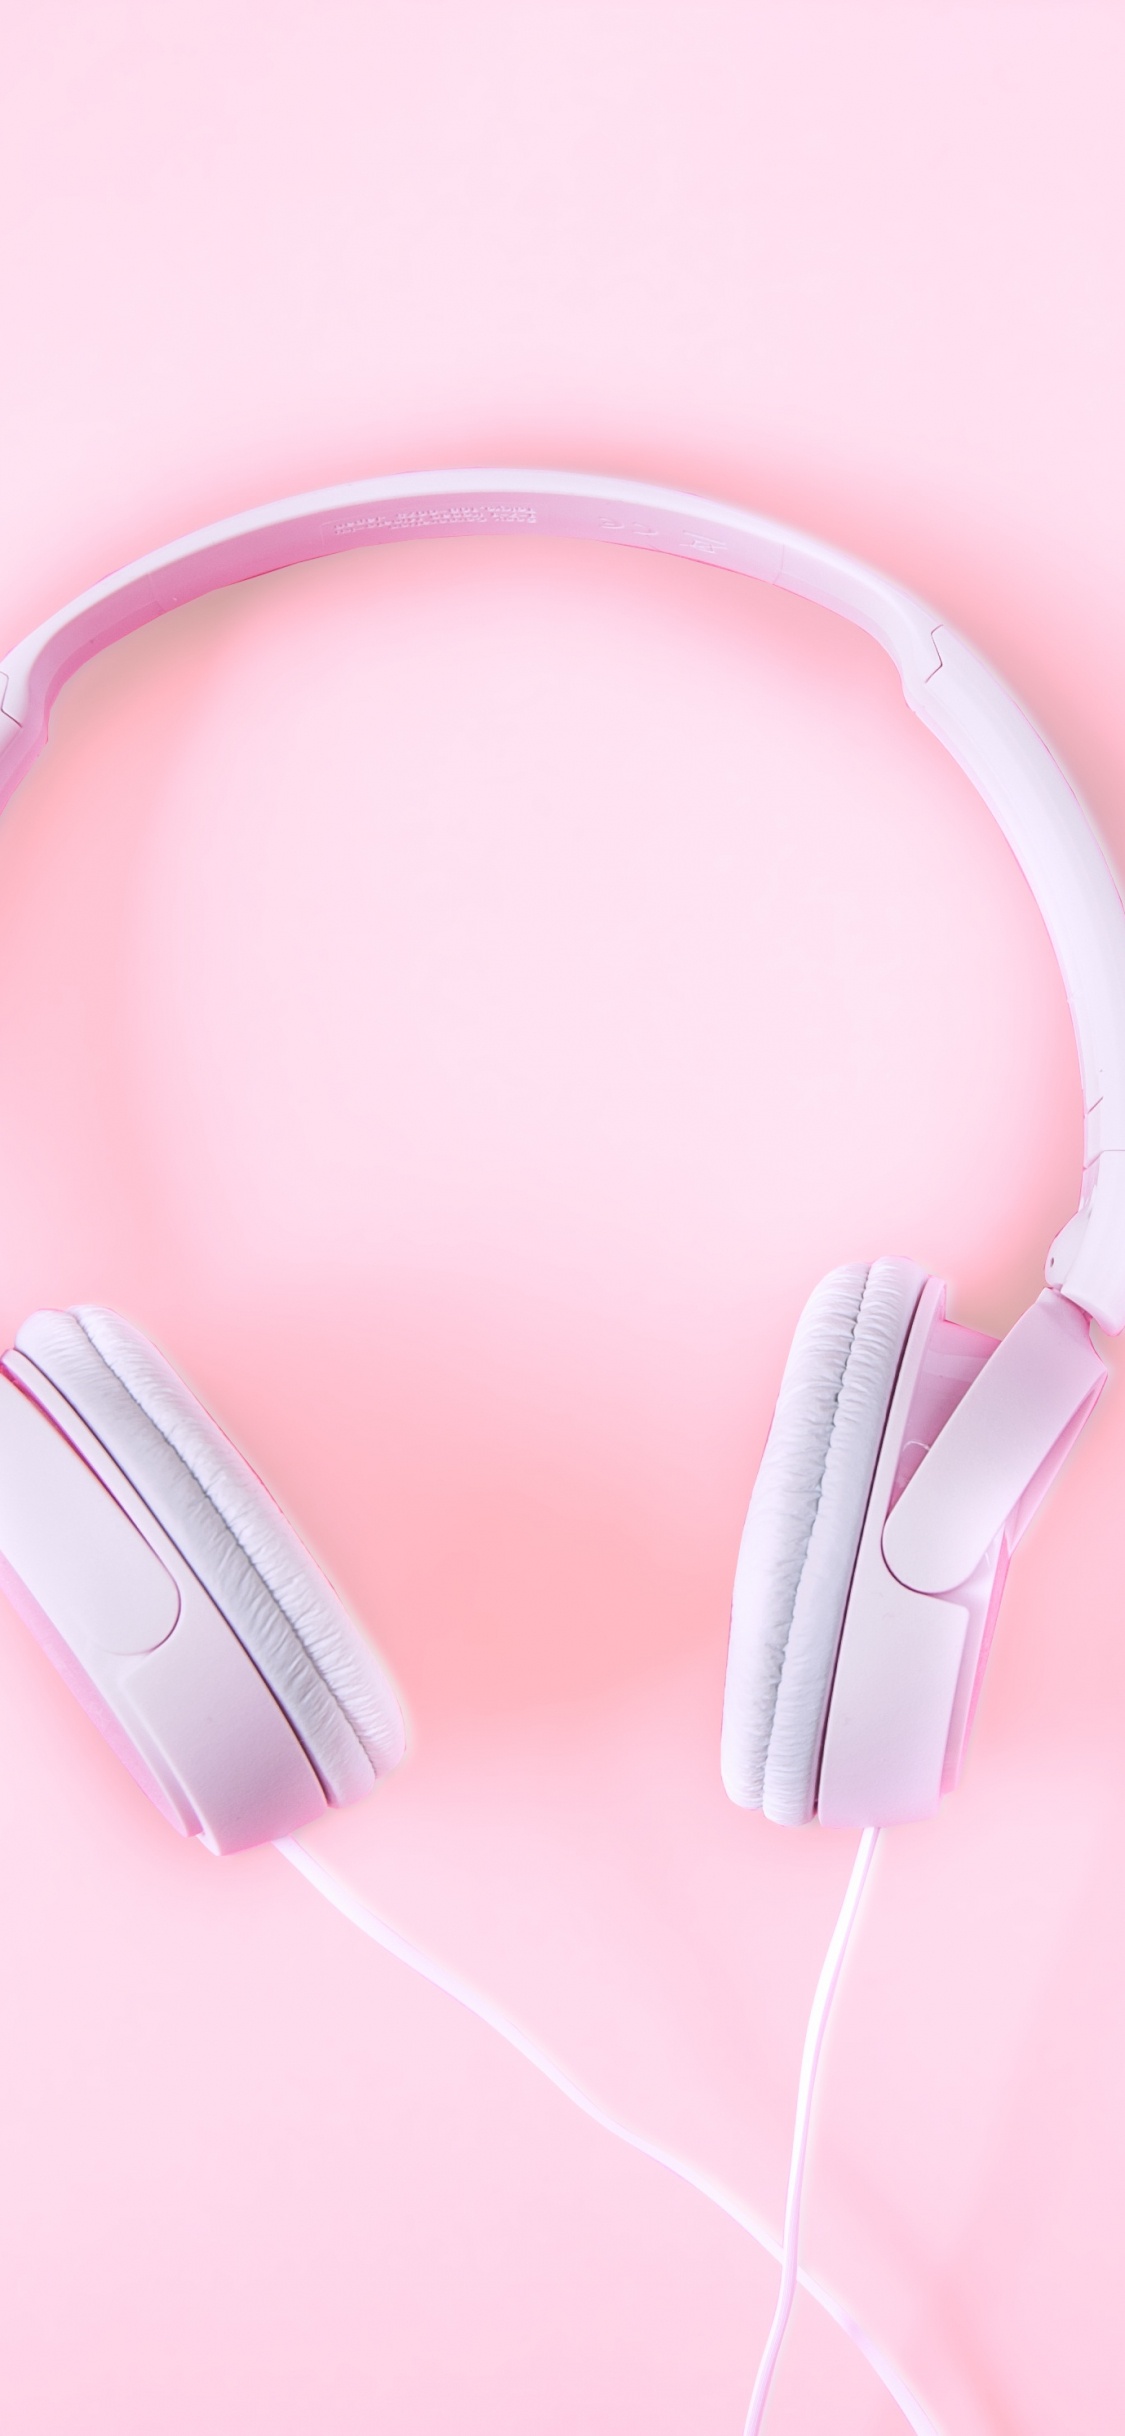 粉红色, 音频设备, 小工具, 耳朵, 电子设备 壁纸 1125x2436 允许